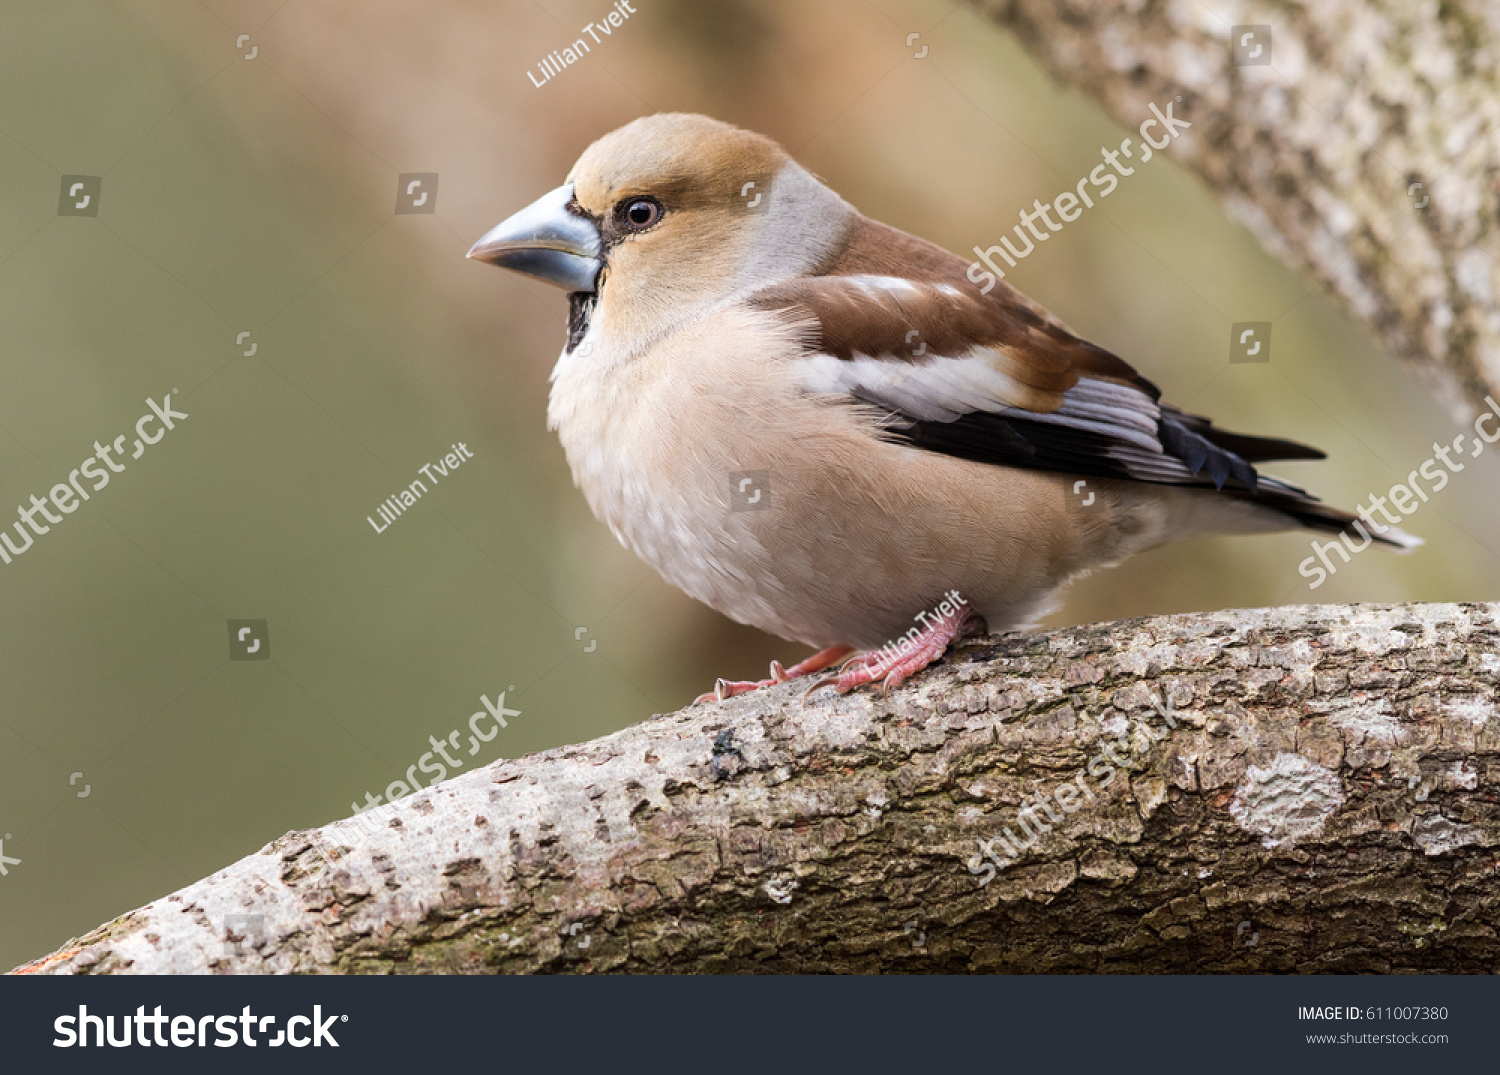 Female Hawfinch sitting on a branch #611007380